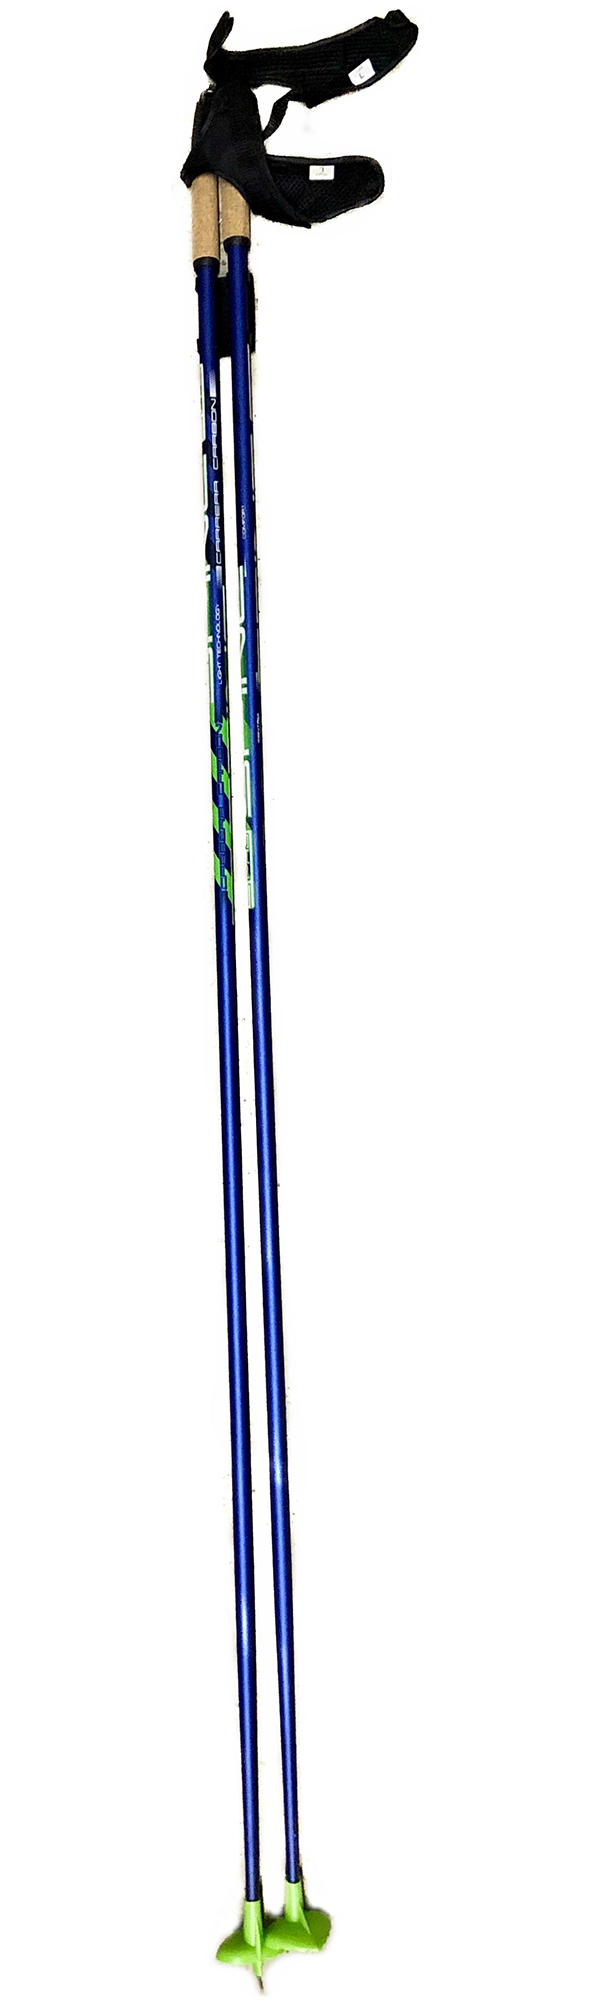 Палки лыжные SPINE Carrera Carbon  10016 1,55 м Сине-зеленый